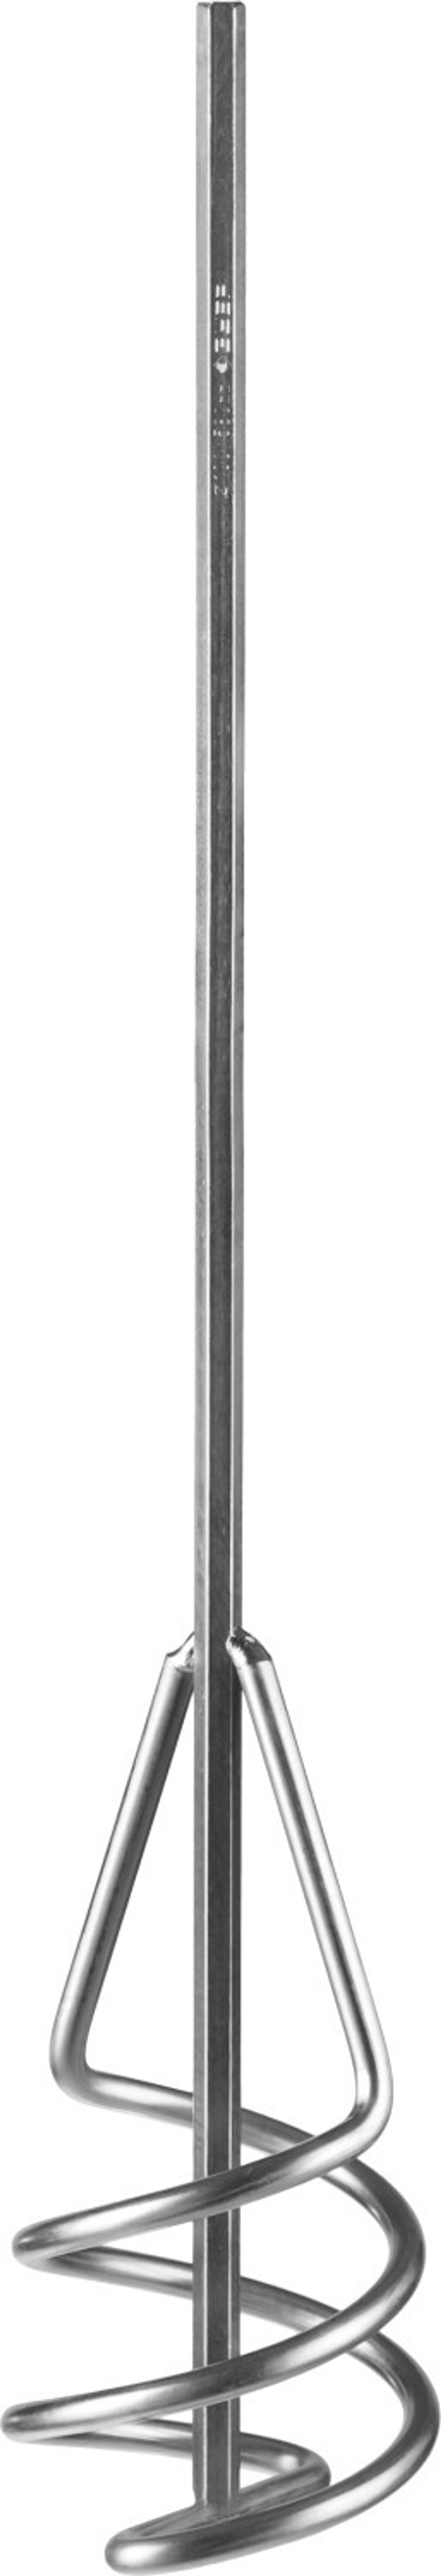 Миксер ЗУБР ″Профессионал″ для песчано-гравийных смесей, шестигранный хвостовик, оцинкованный, на подвеске, 100х580мм